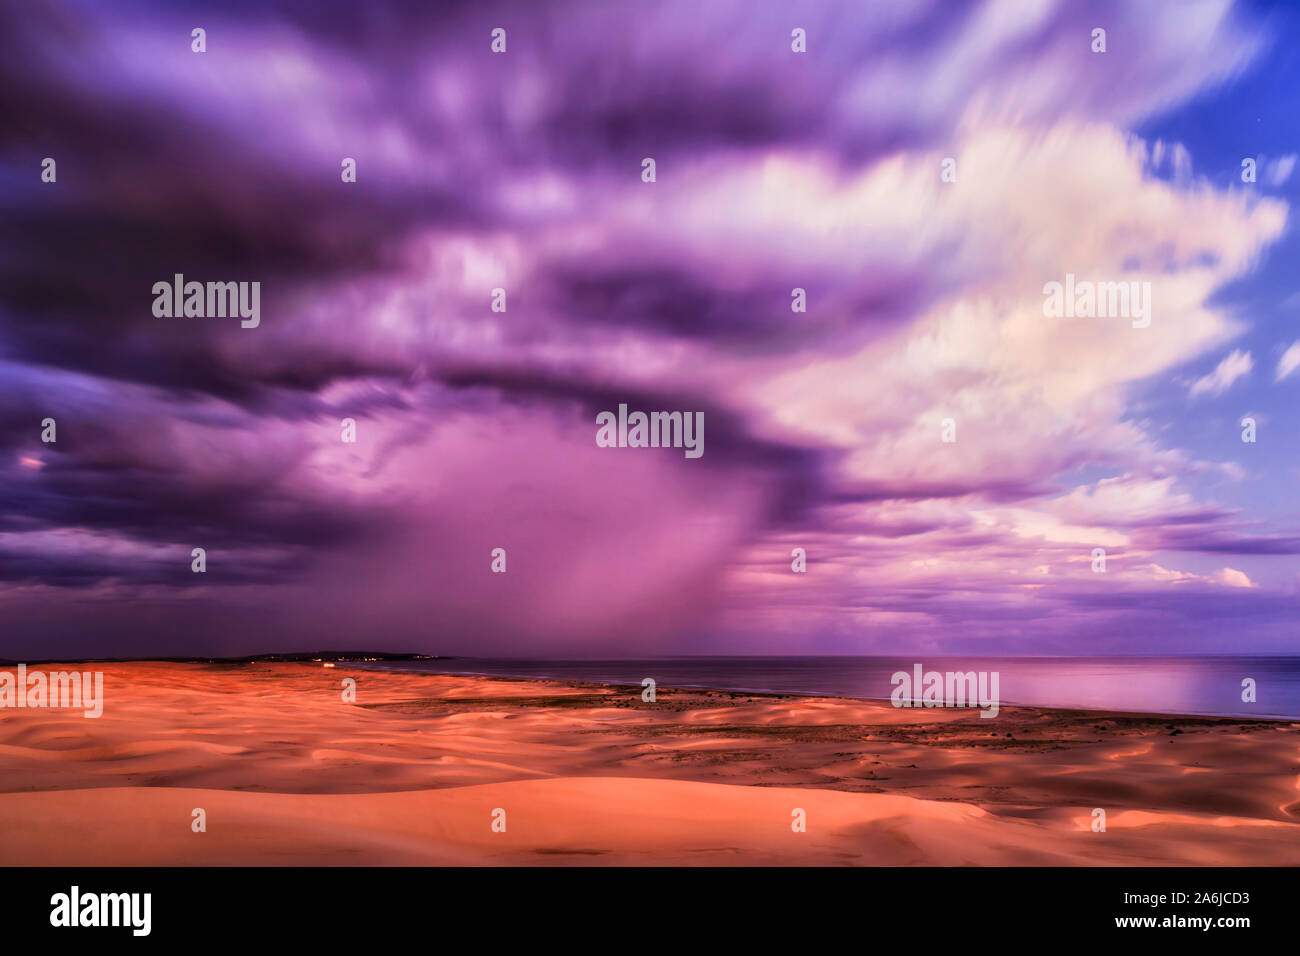 Ciel avec nuages haut floue au coucher du soleil reflétant la lumière sur la dernière journée de l'océan Pacifique et des dunes de sable de Stockton Beach en Australie - paysage marin coloré Banque D'Images